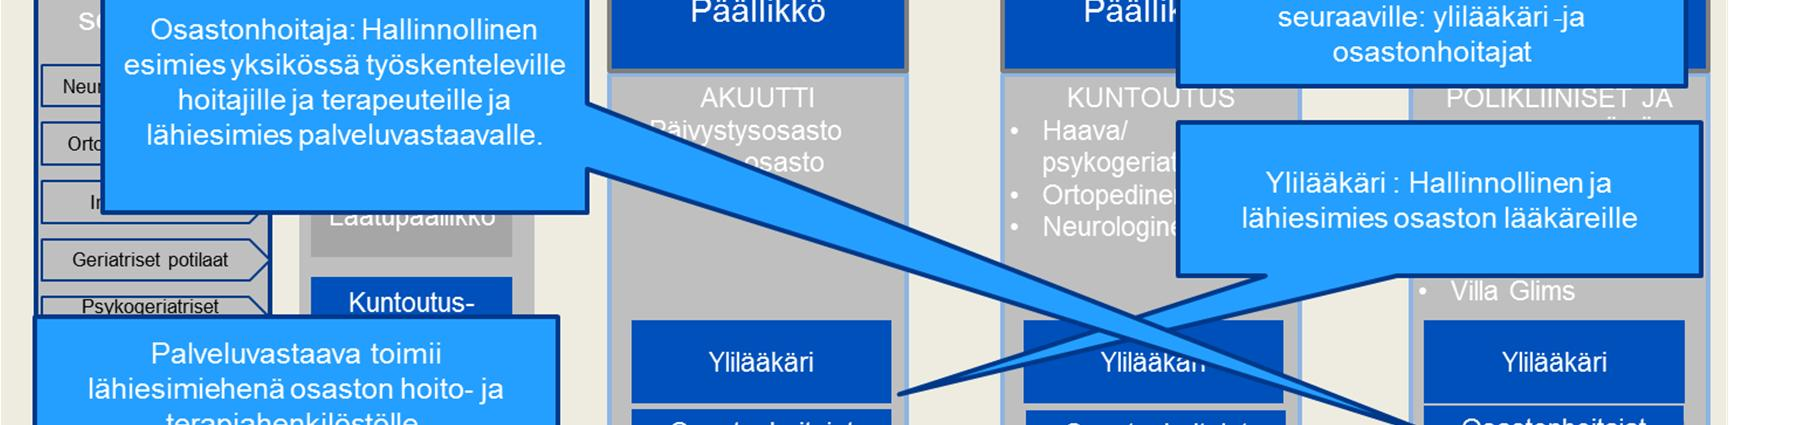 Espoon uuden sairaalan keskeiset johtamisfoorumit Espoon uuden sairaalan johtaminen muodostuu kolmen keskeisen johtamisfoorumin ympärille, jotka ovat